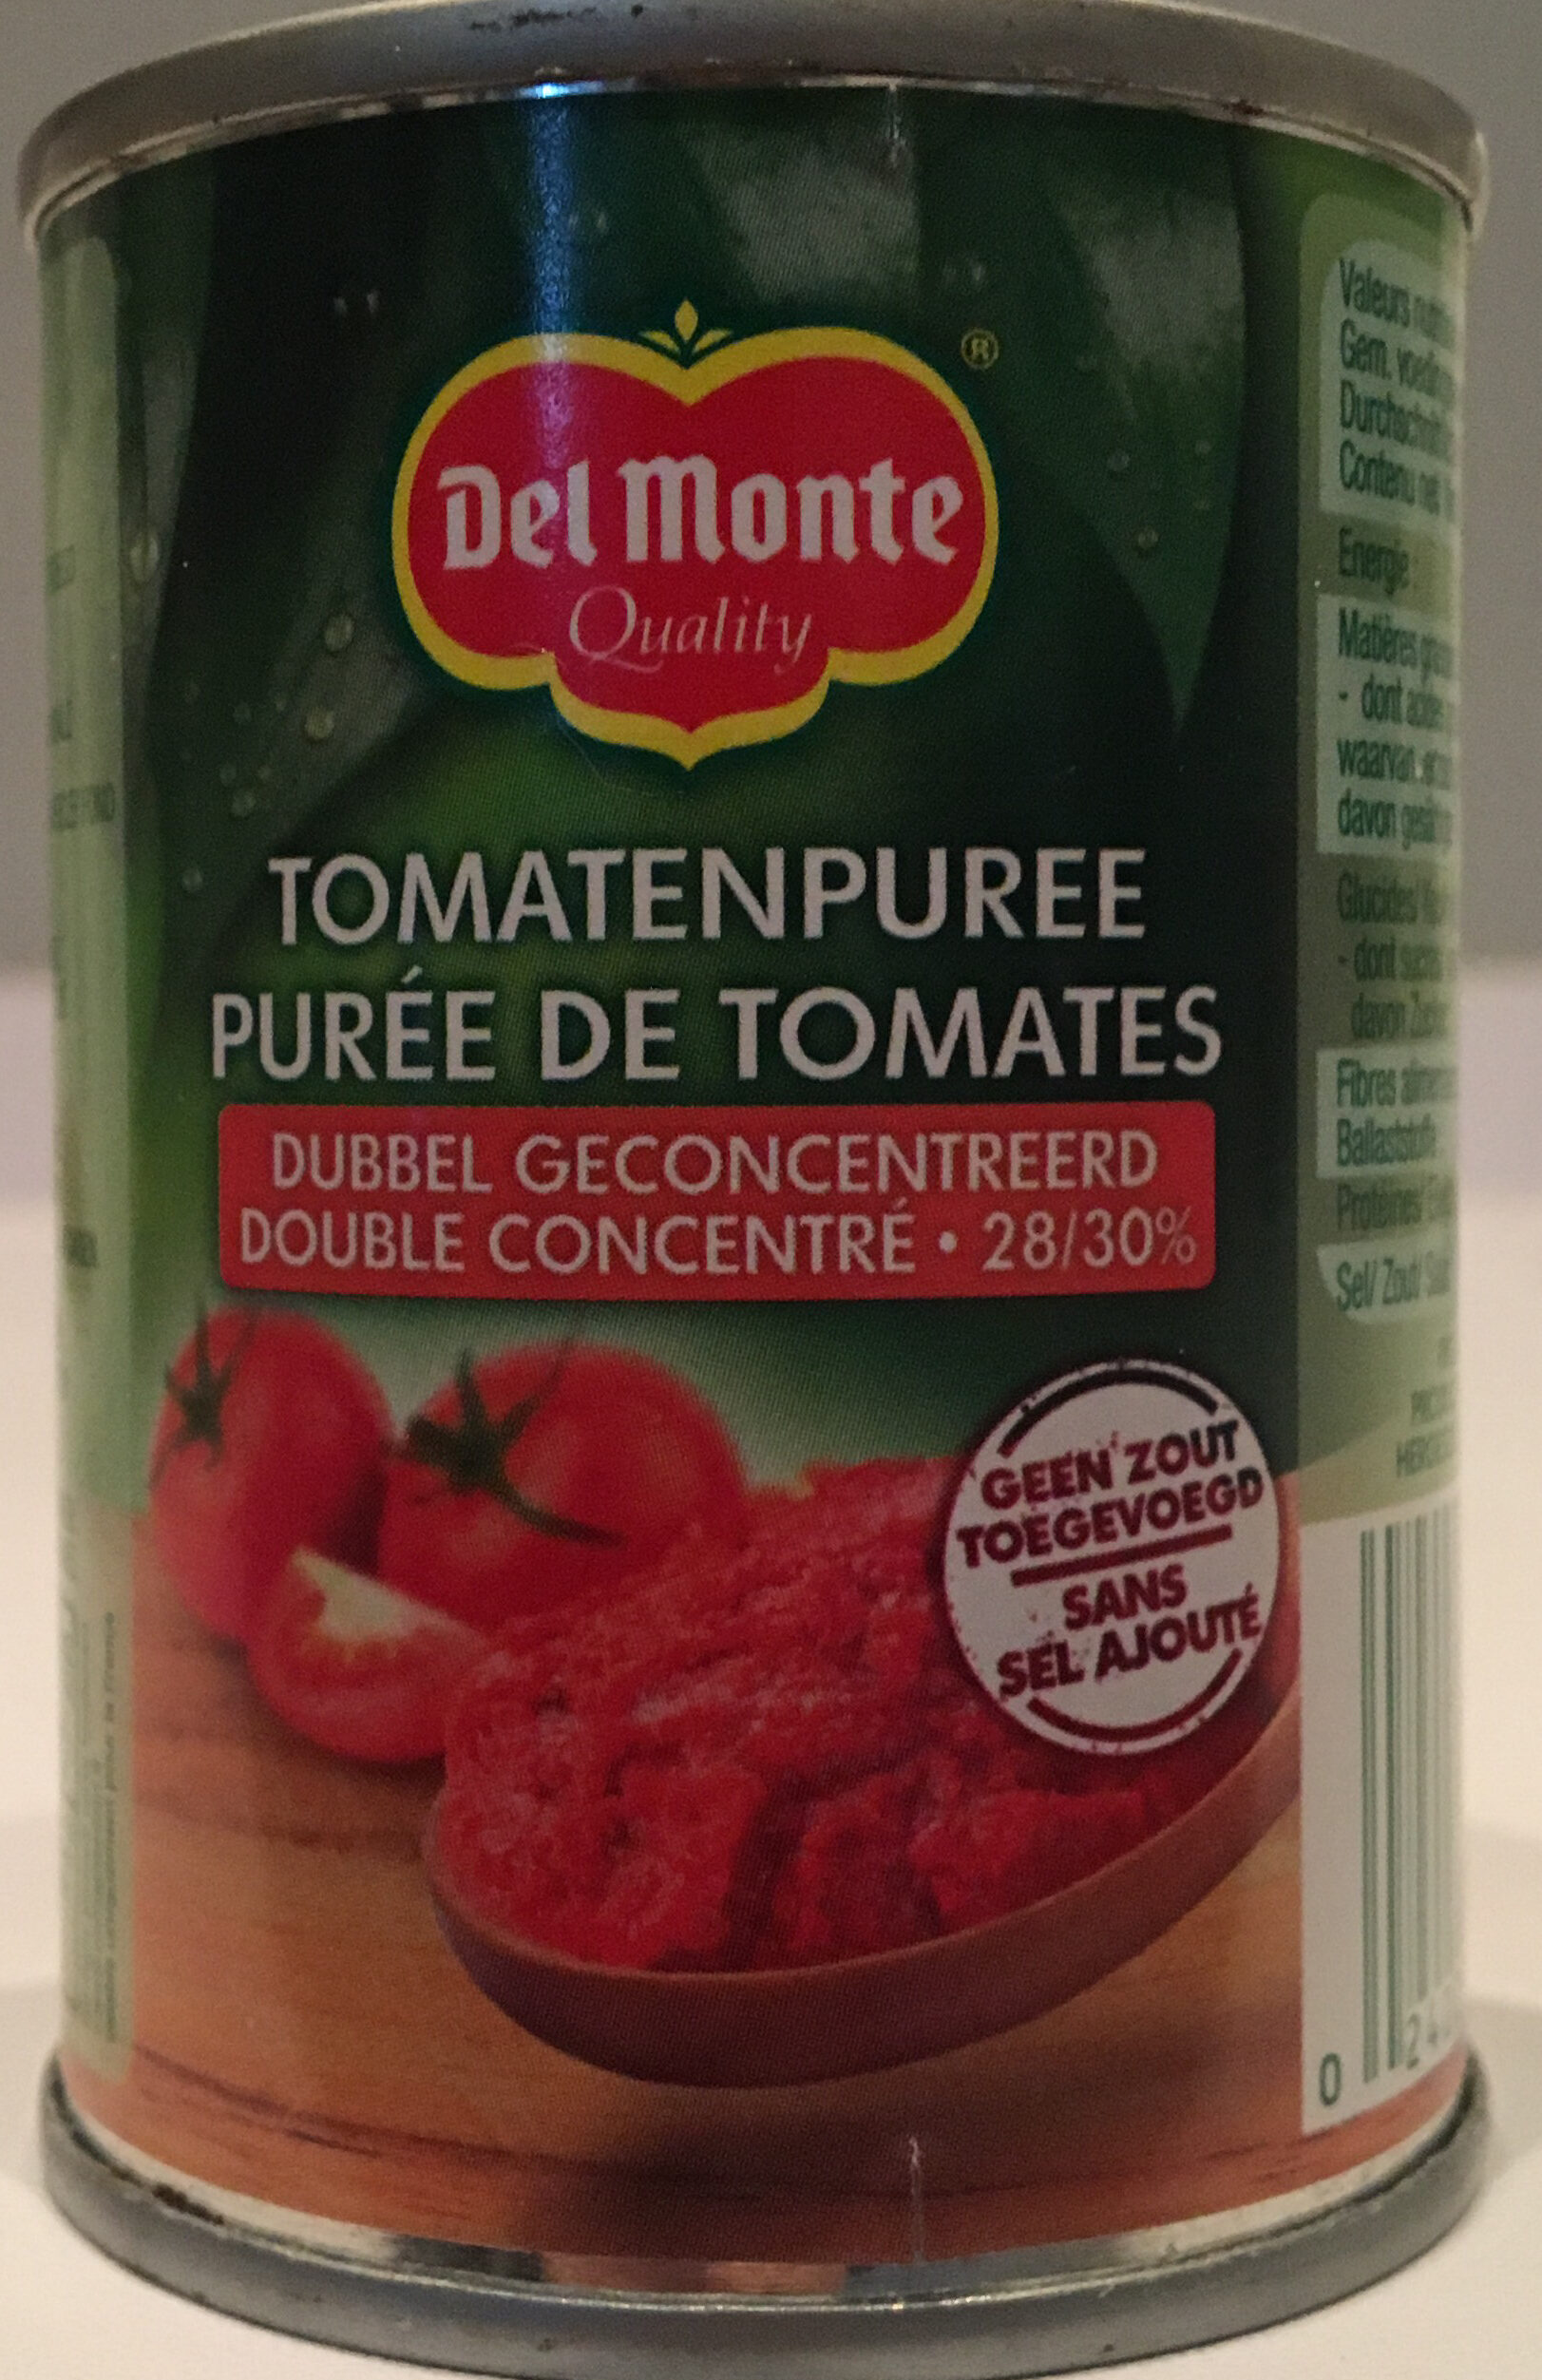 Tomatenpuree, dubbel geconcentreerd - Product